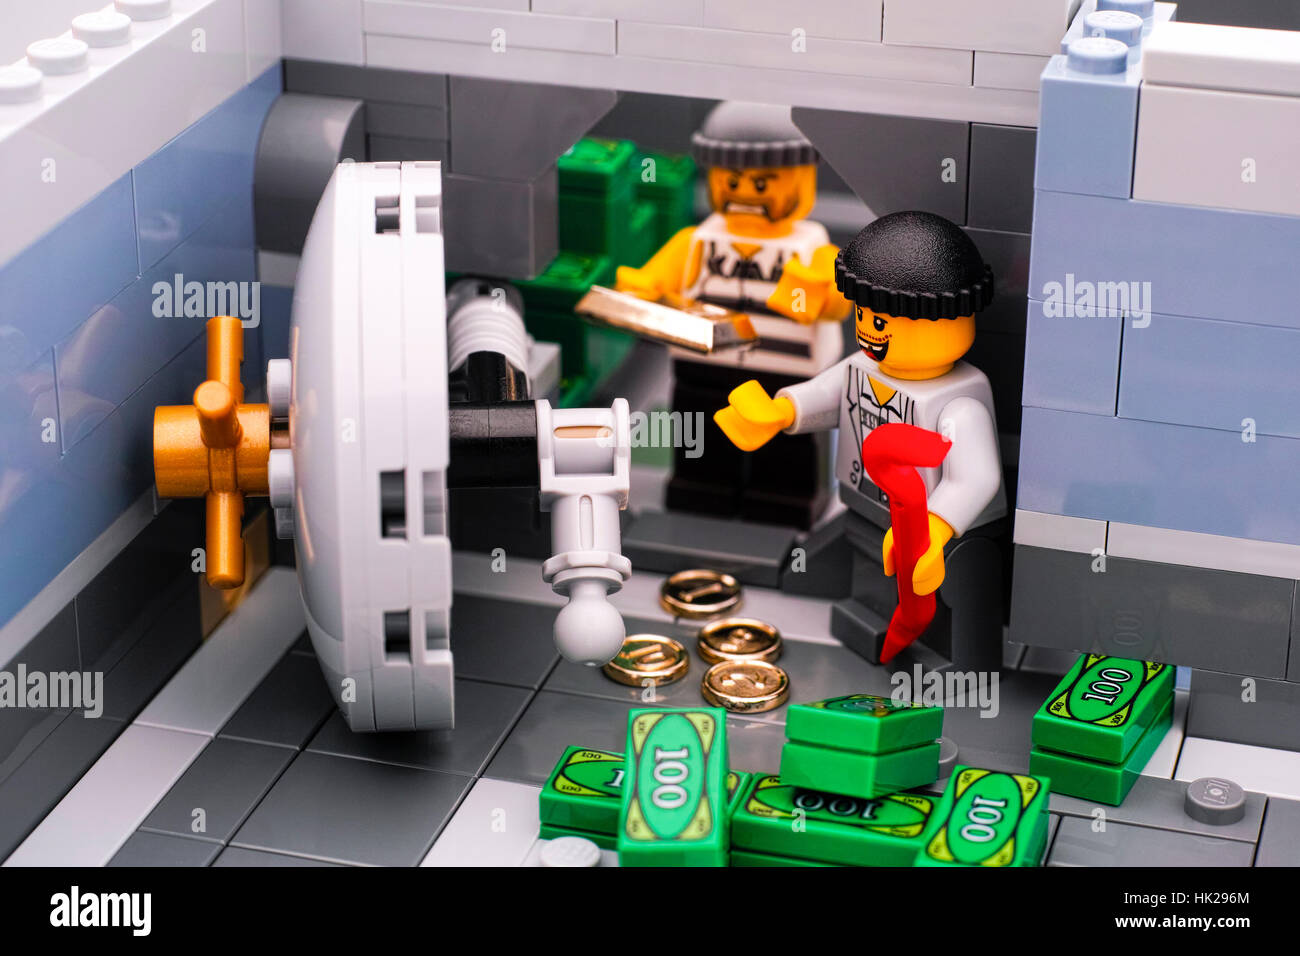 Tambov, Fédération de Russie - janvier 08, 2017 banque Lego cambriolage. Deux voleurs se porte de chambre forte de banque et retirer de l'argent et l'or. Studio shot. Banque D'Images